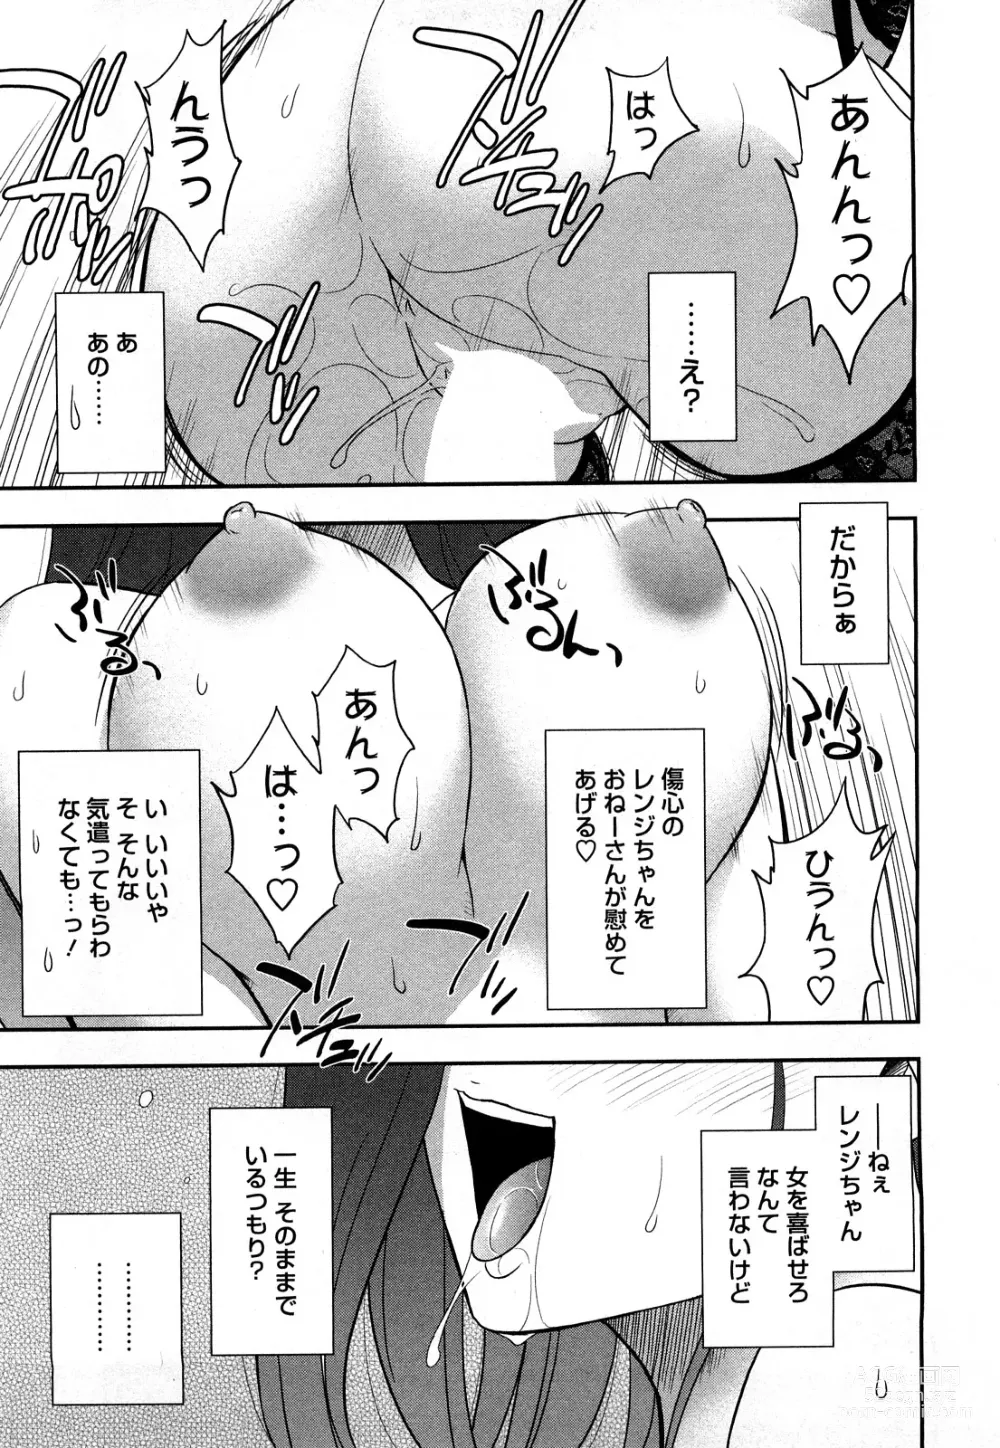 Page 173 of manga Megamisou Panic!